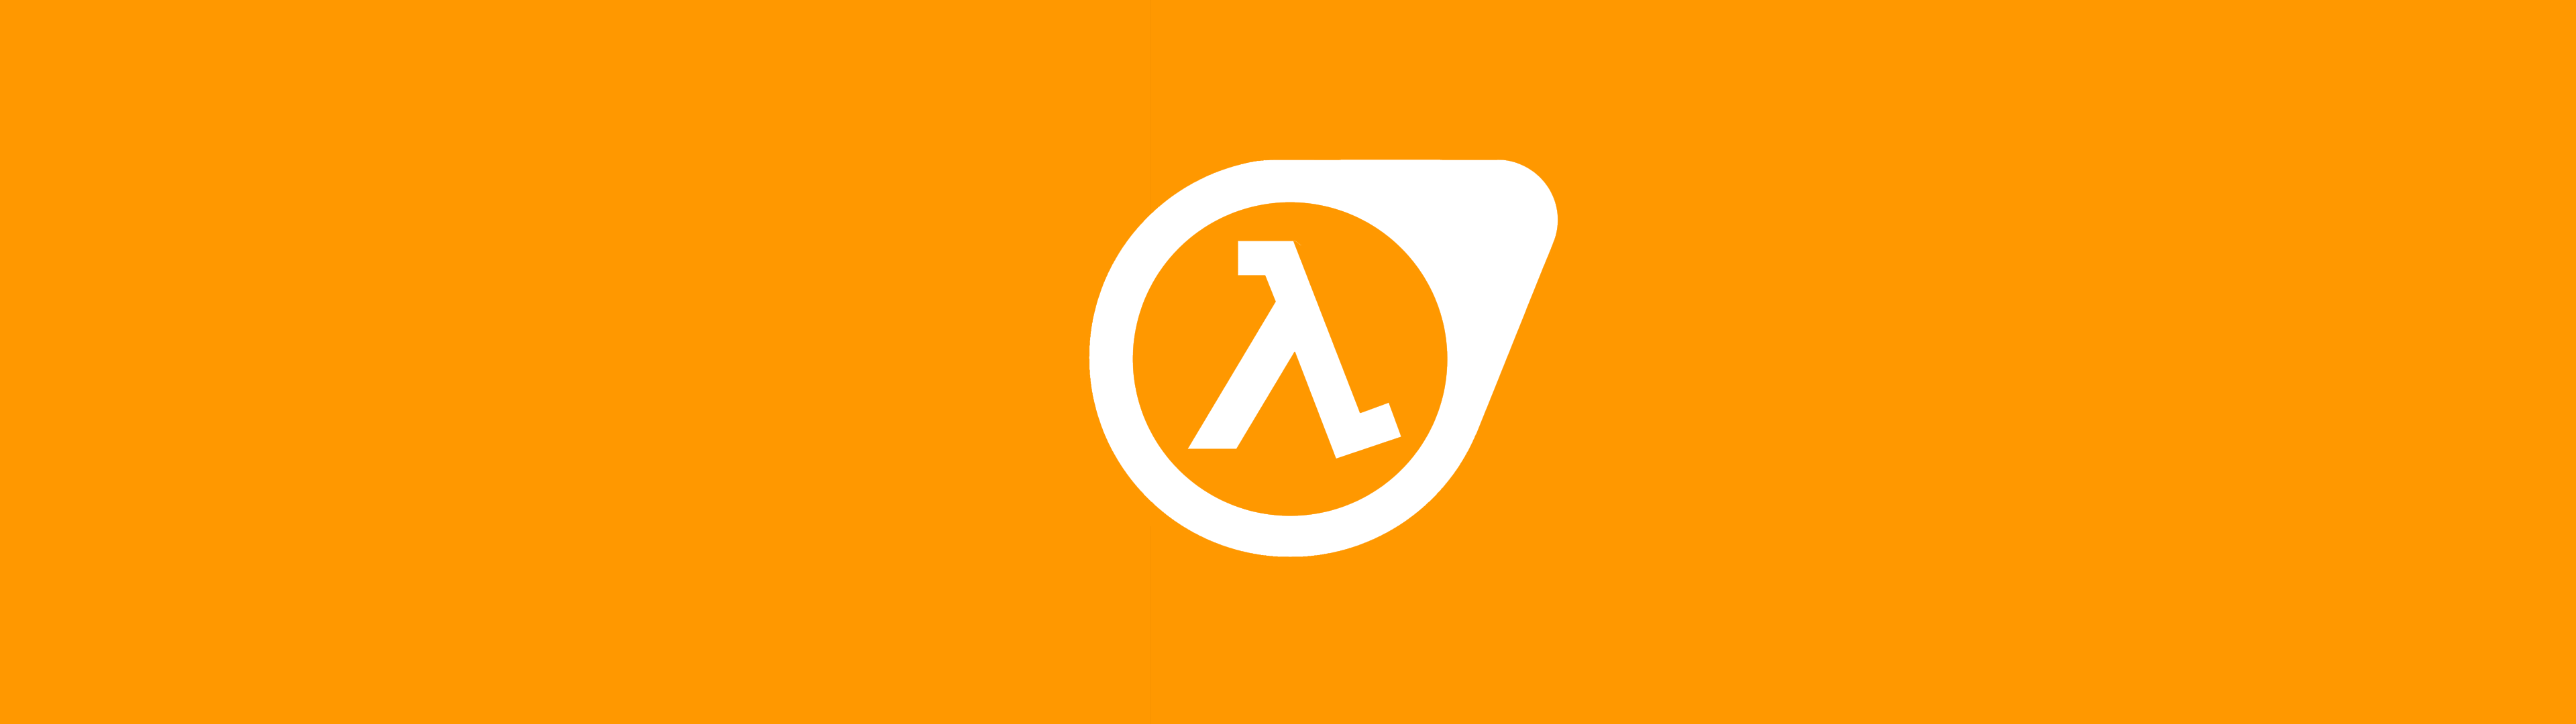 Illustration représentant le logo du jeu-vidéo Half-Life